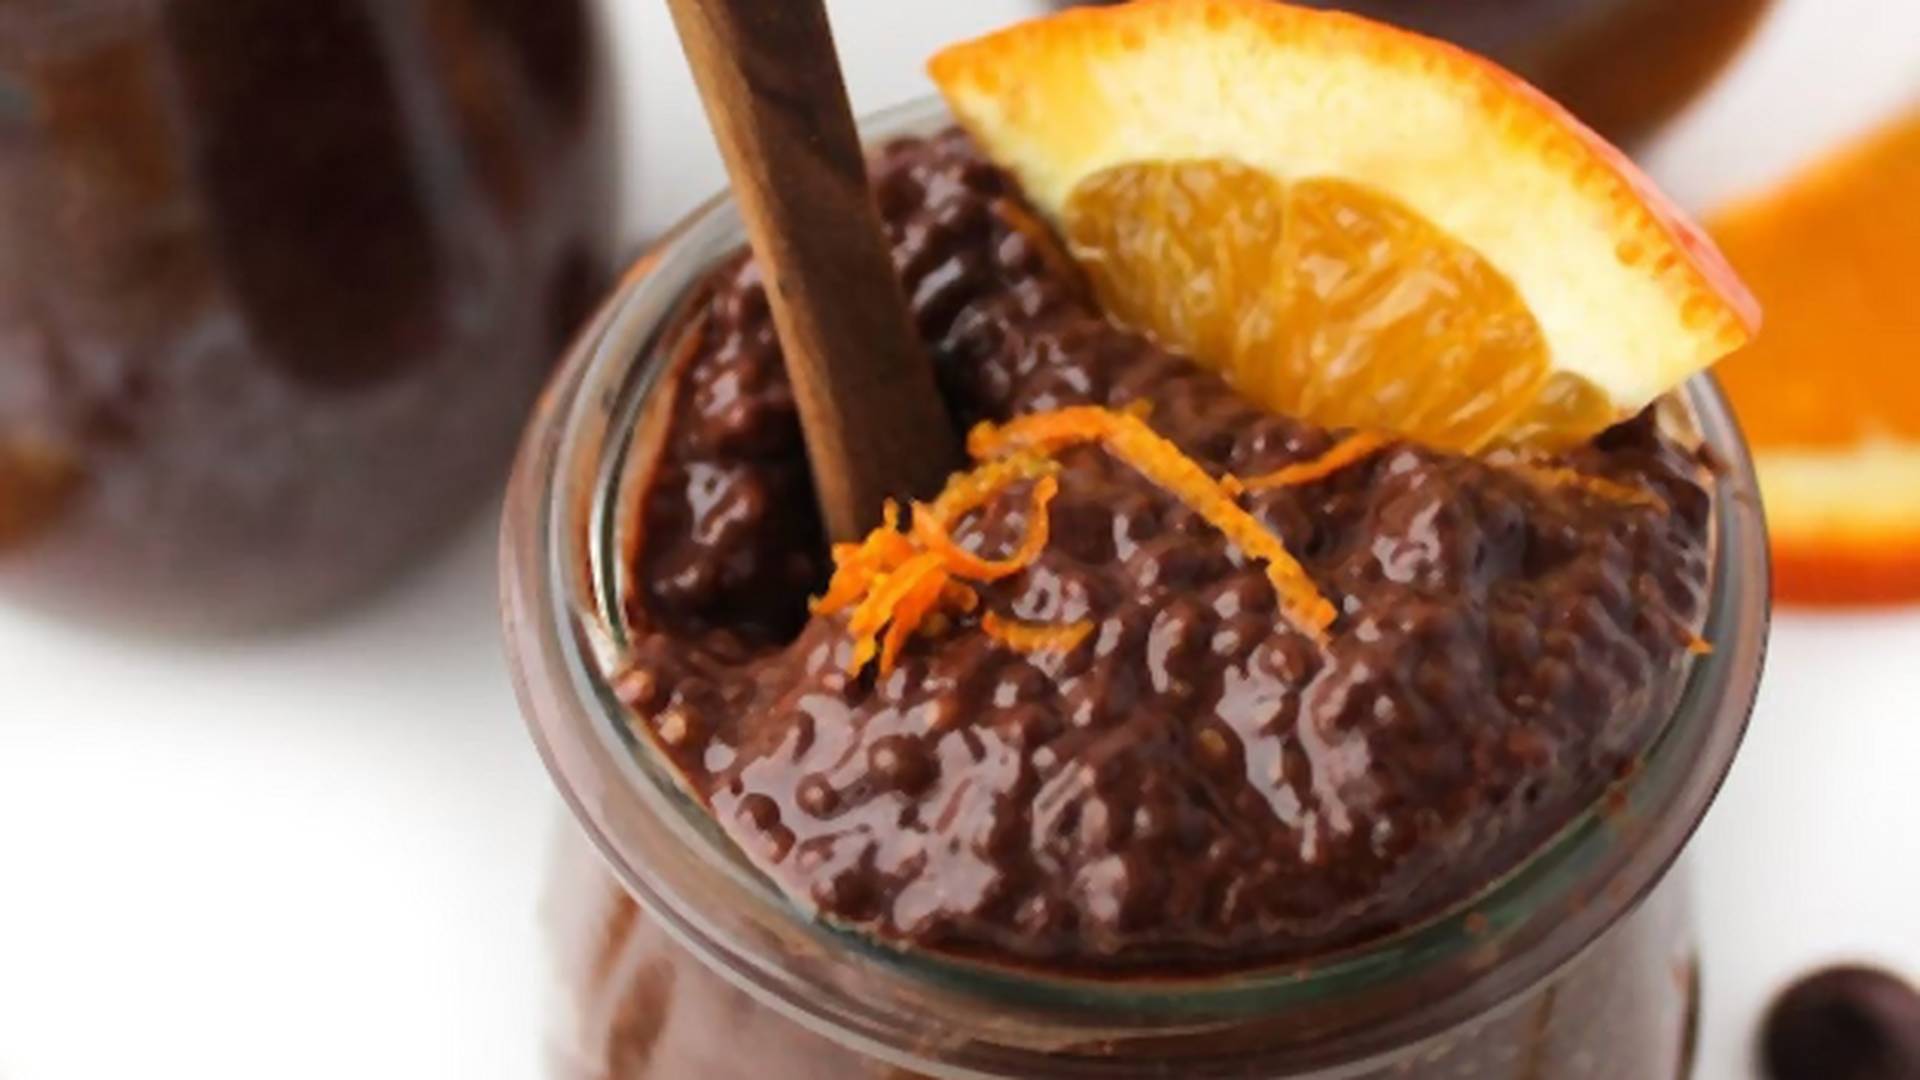 Przepisy na najlepsze puddingi - z chia, z tapioki, z kaszy jaglanej, z czekoladą i więcej. Spróbuj się oprzeć!